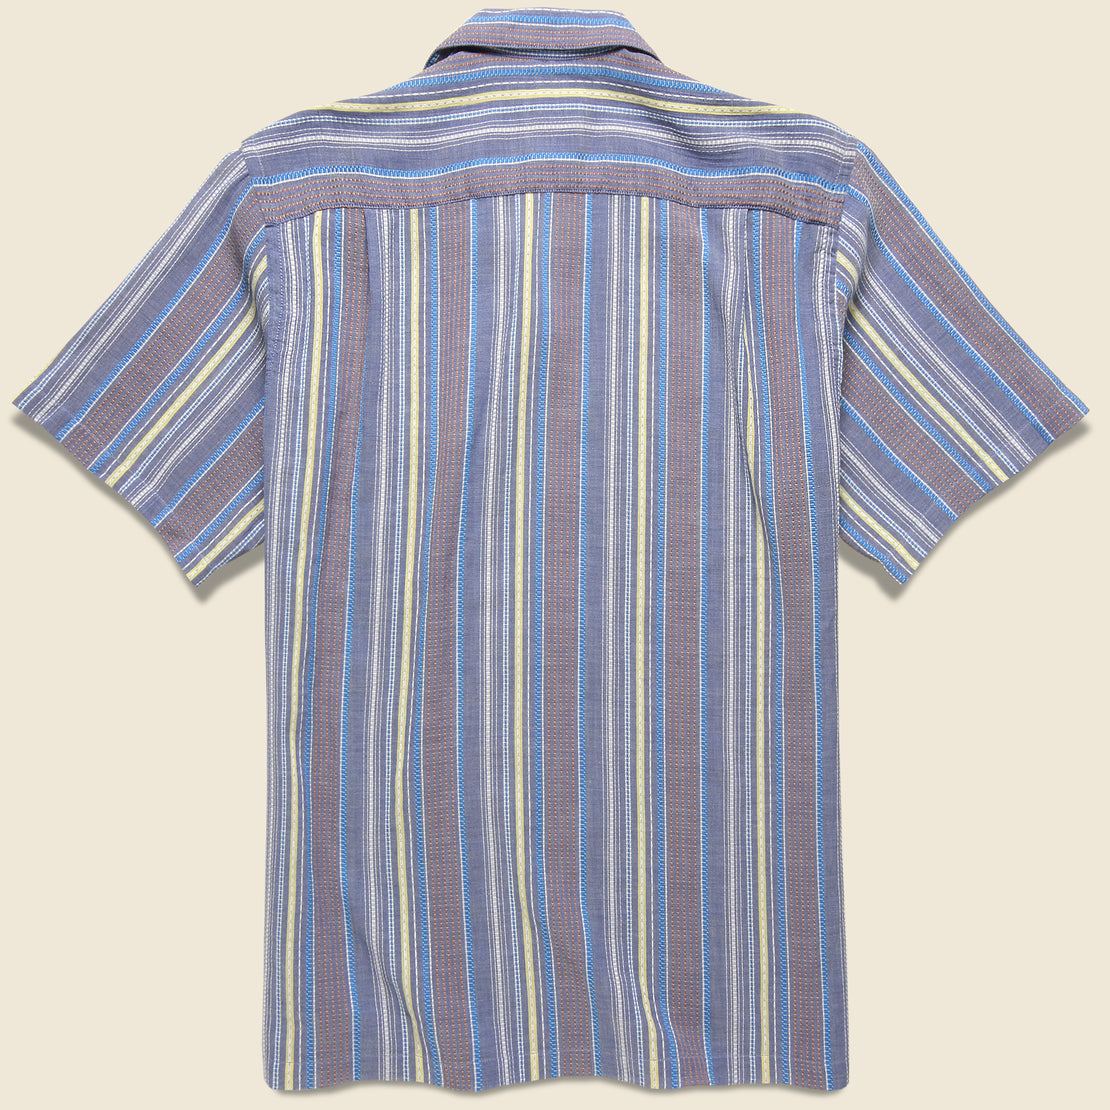 Goliver Stripe Shirt - Blue/Cream Multi - Portuguese Flannel - STAG Provisions - Tops - S/S Woven - Stripe